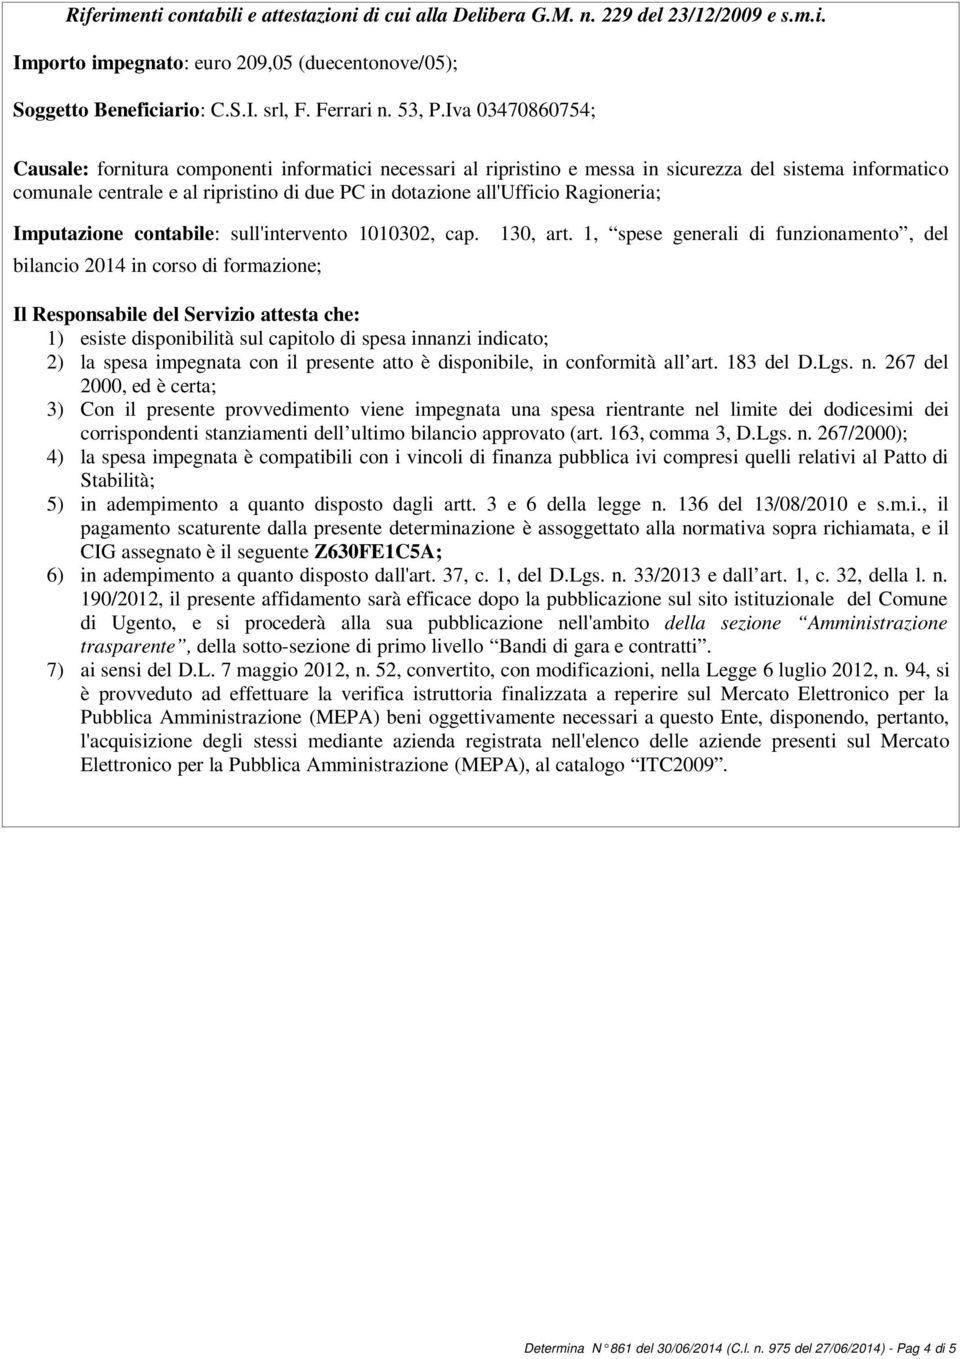 Ragioneria; Imputazione contabile: sull'intervento 1010302, cap. 130, art.